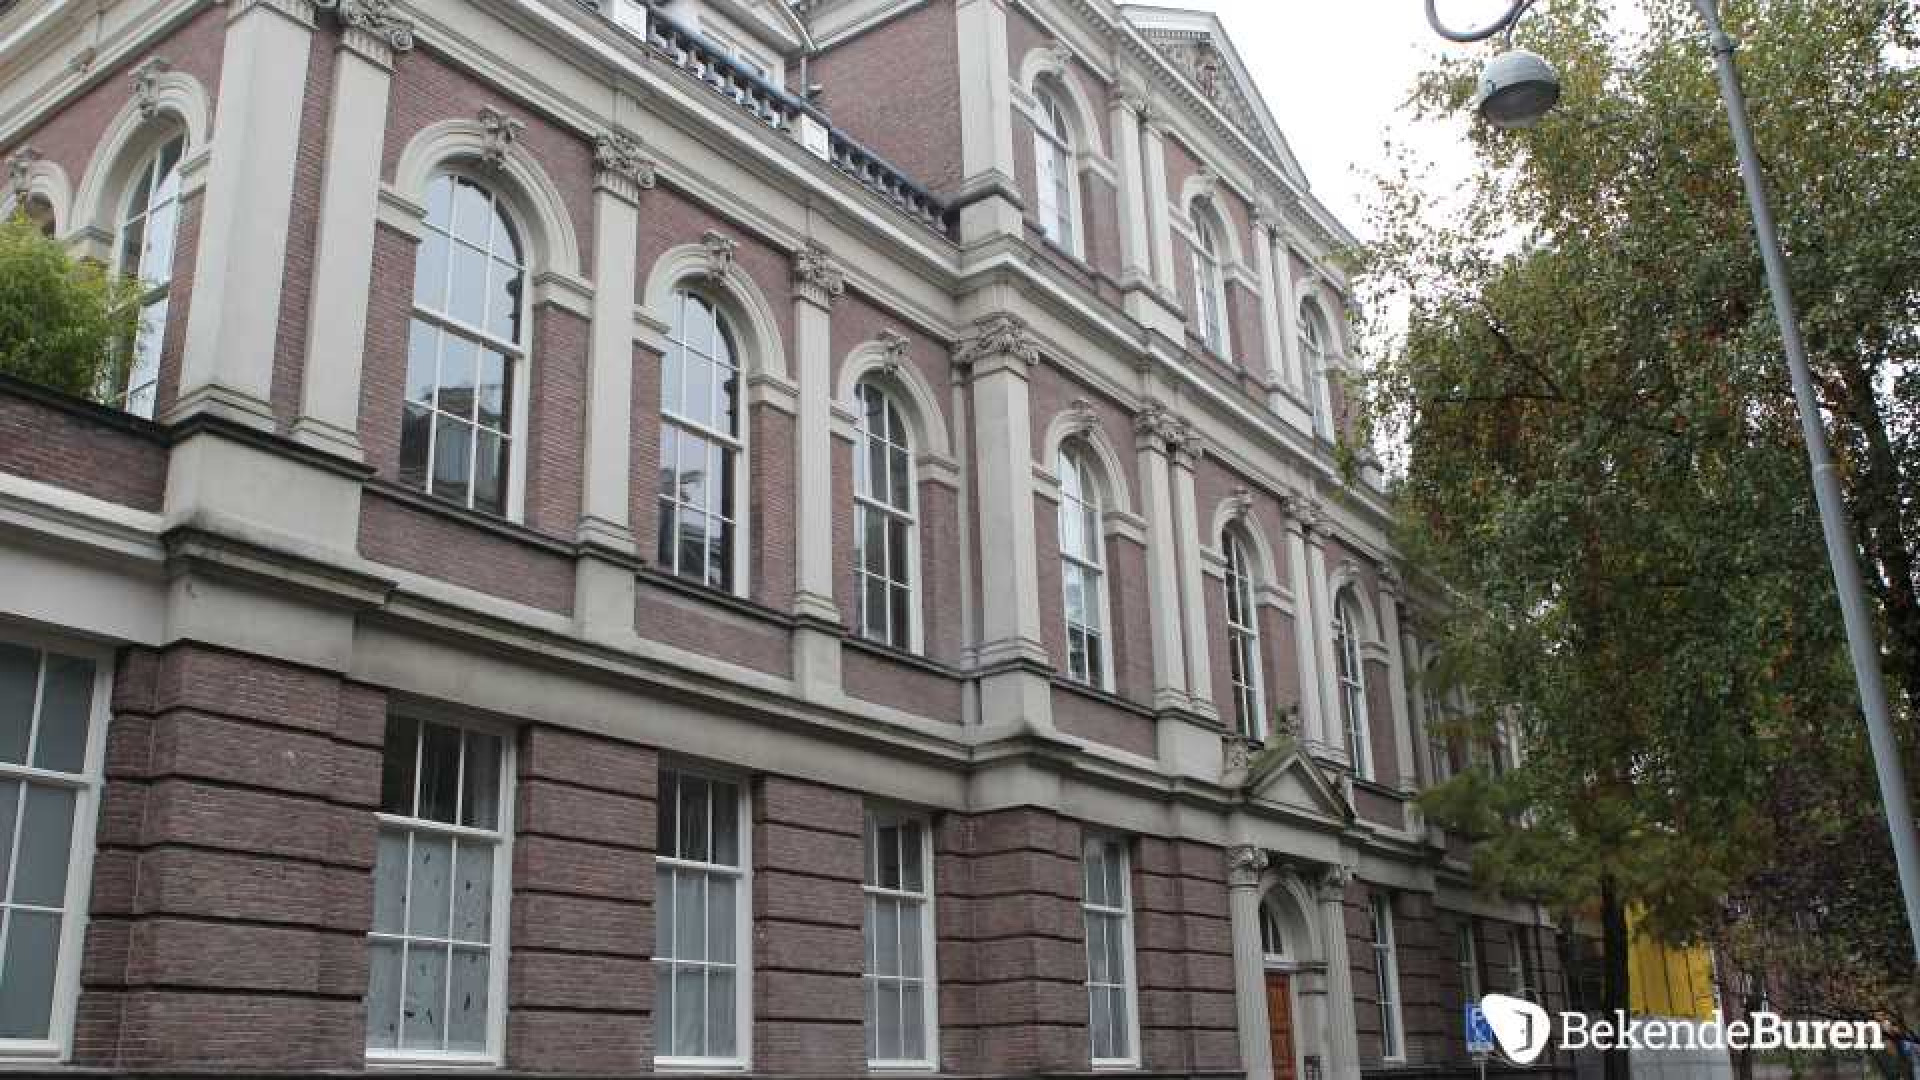 Jort Kelder koopt miljoenenappartement in het centrum van Amsterdam. Zie foto's 1